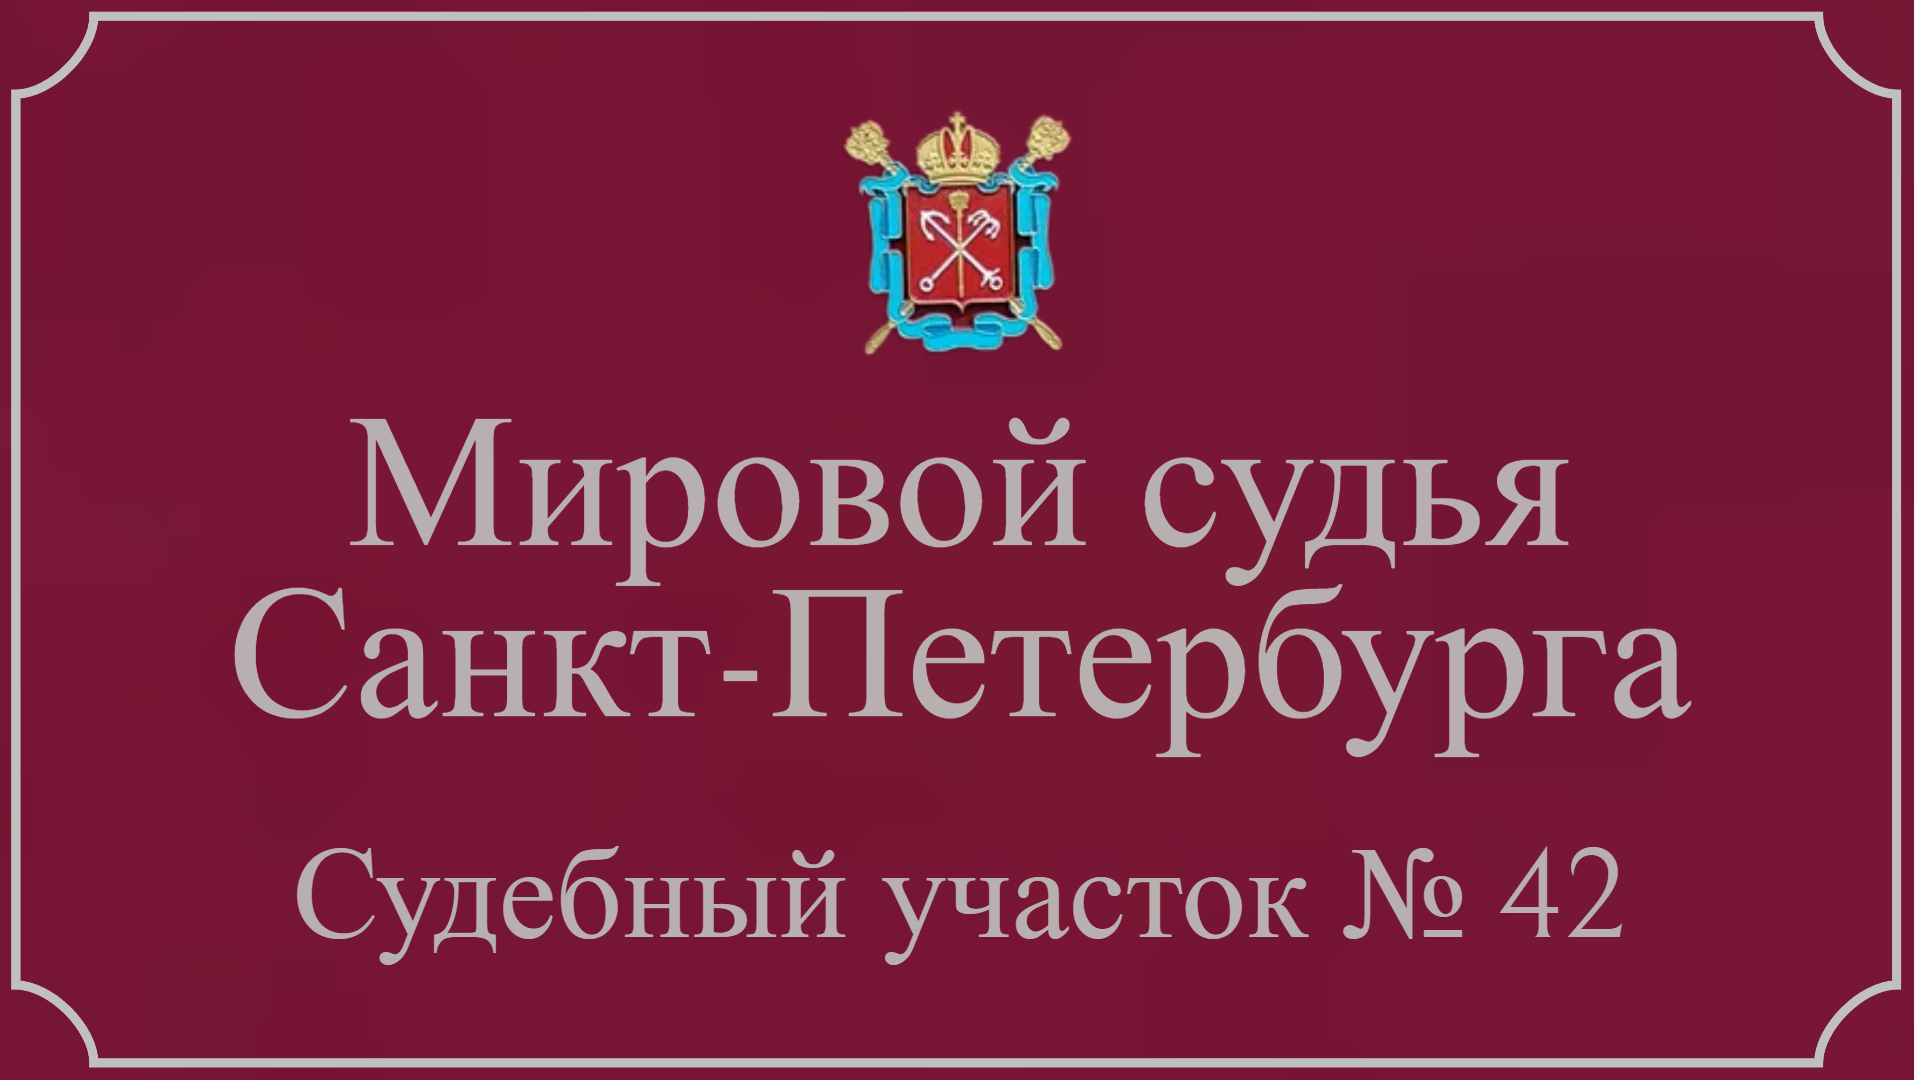 Информация по 42 судебному участку в Санкт-Петербурге.